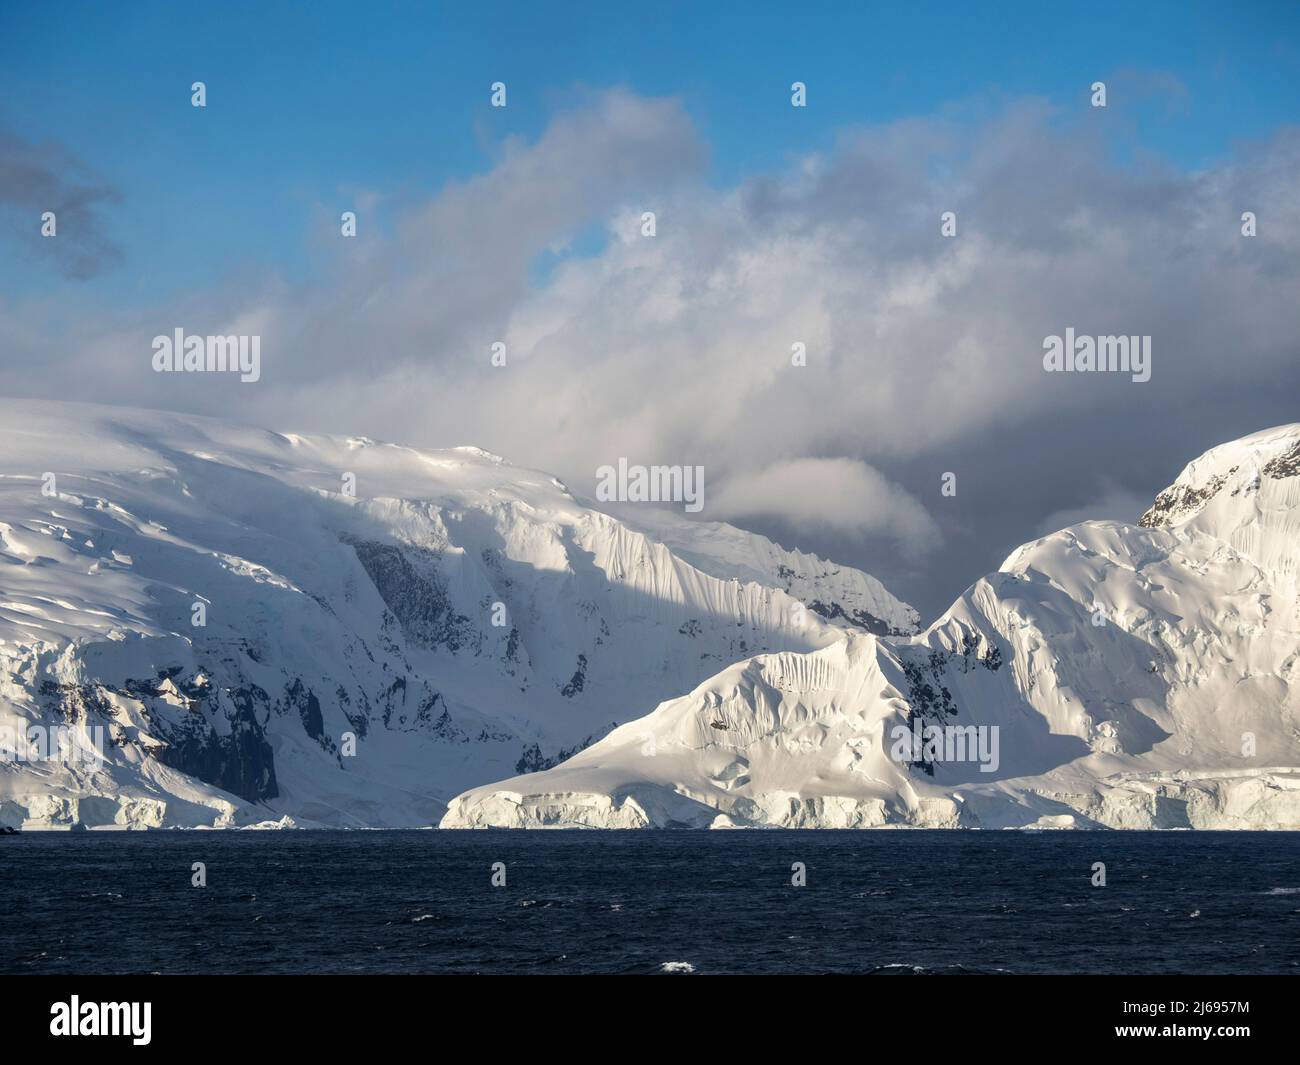 Montagnes enneigées sur l'île Danco, en face de la péninsule antarctique, Antarctique, régions polaires Banque D'Images